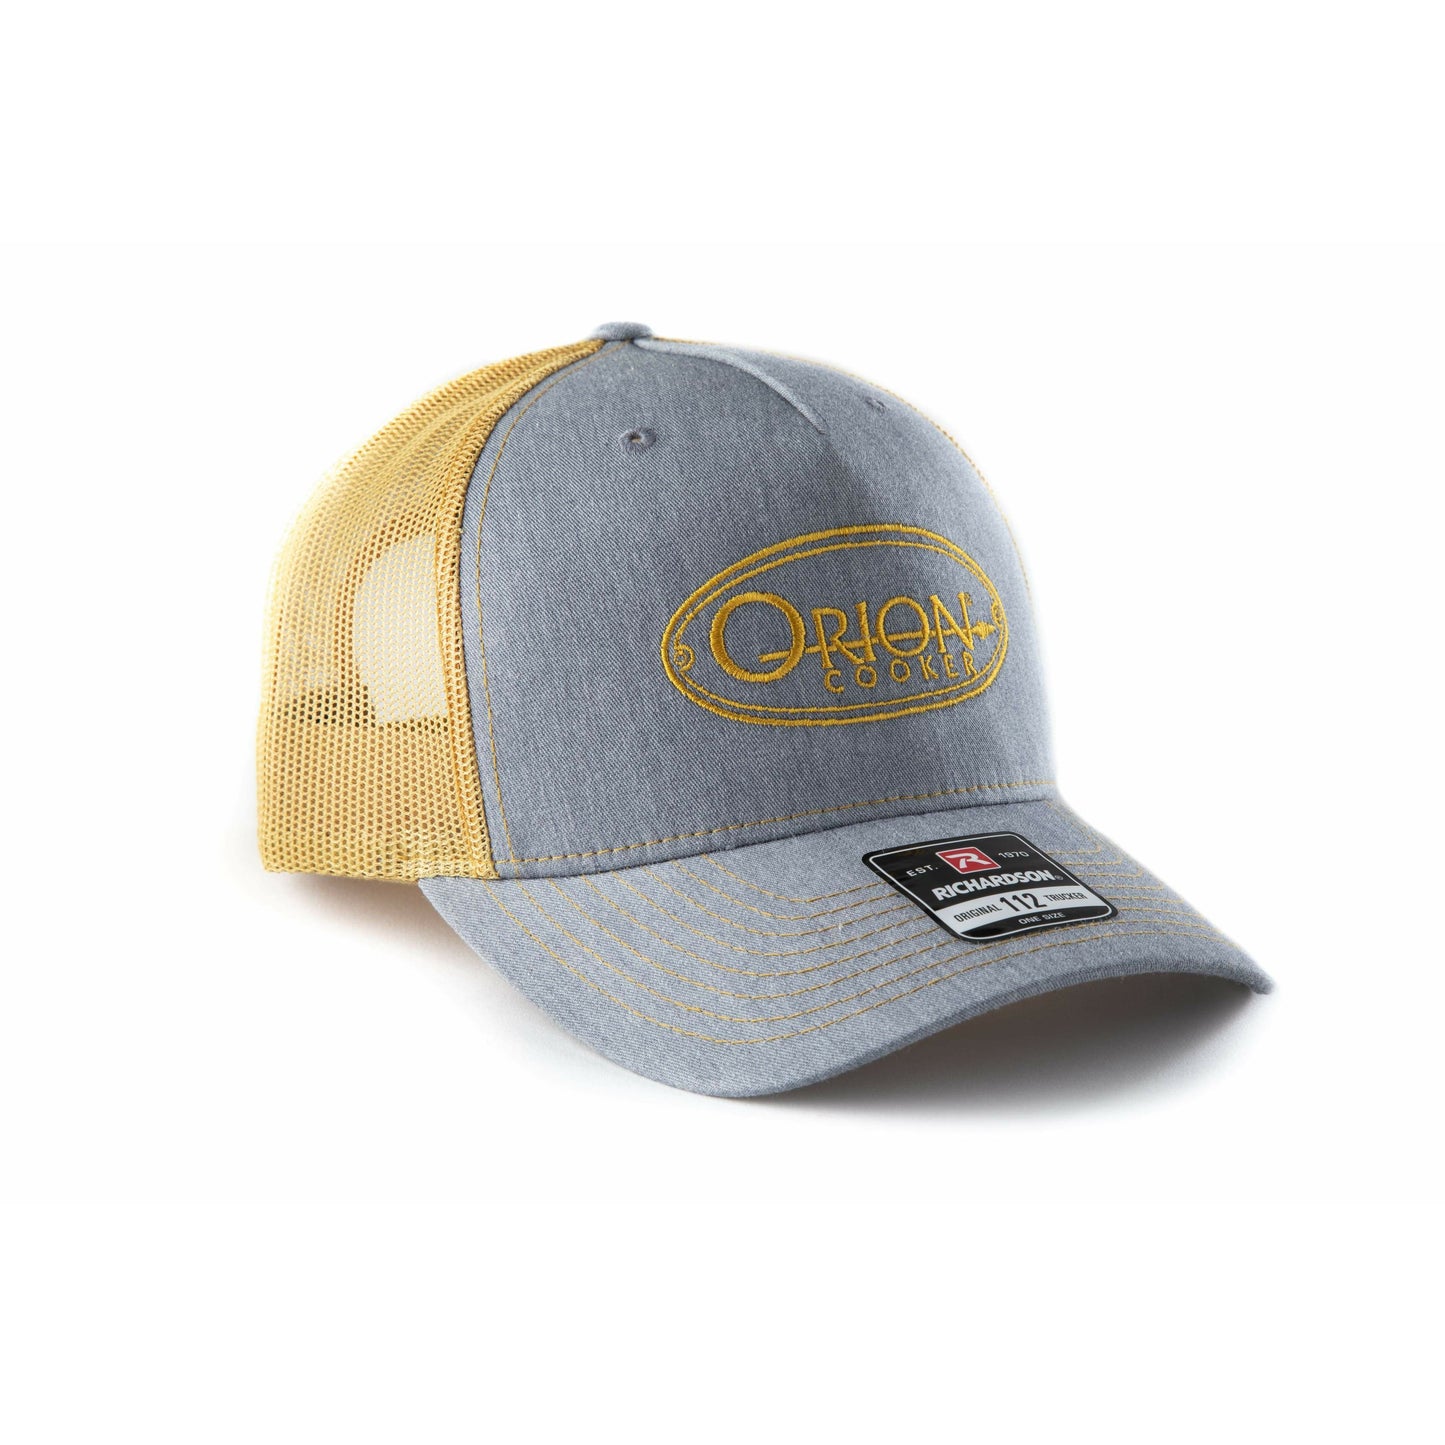 Richardson 112 Orion Cooker Trucker Hat